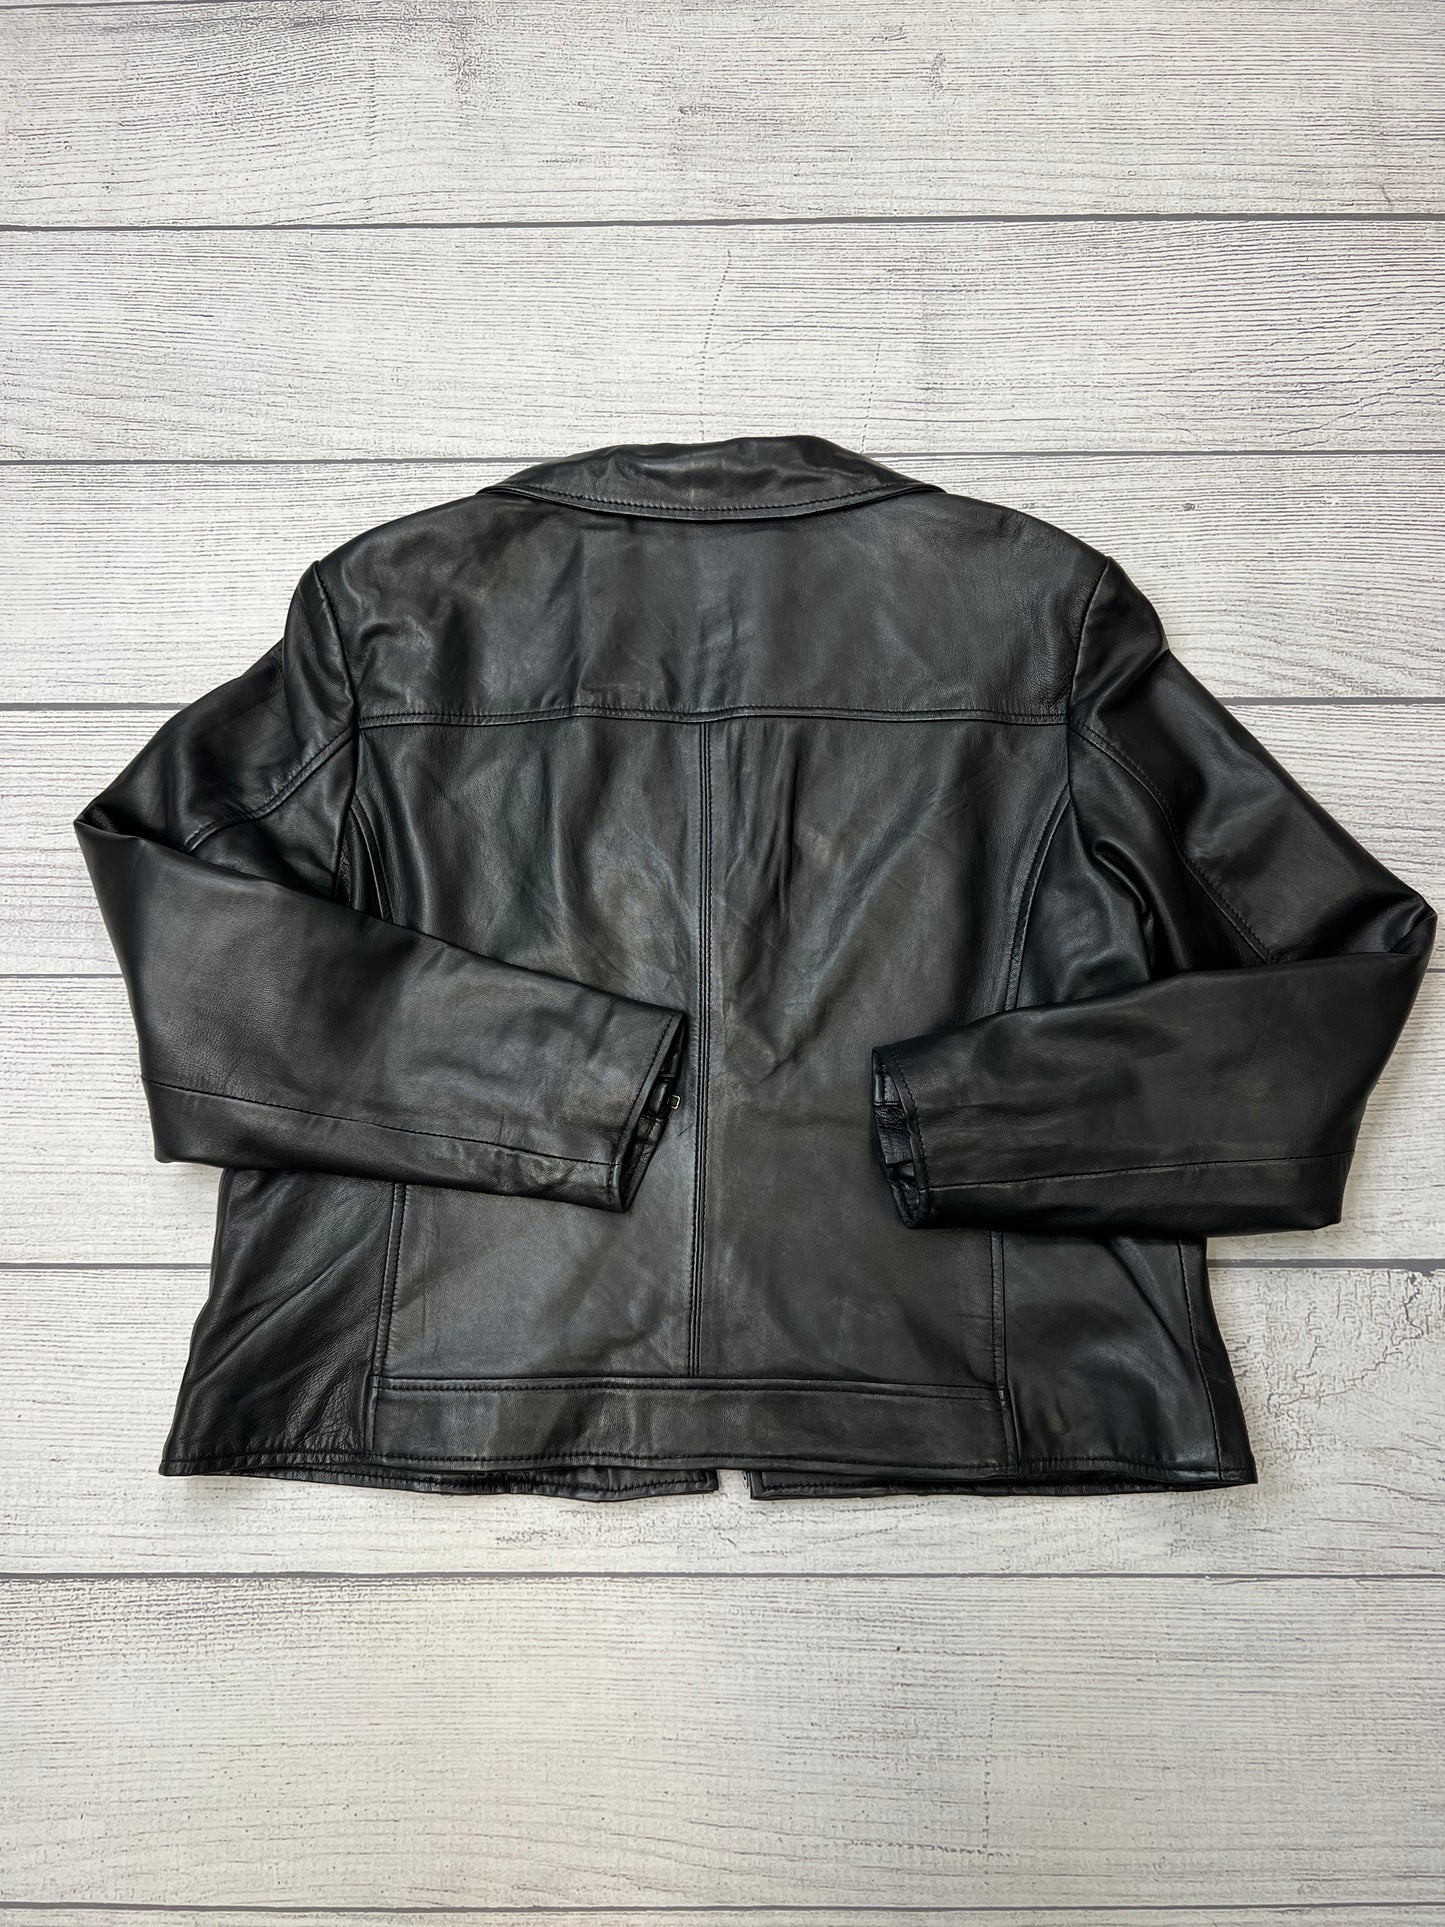 Jacket Leather By Whet Blu  Size: Xxl